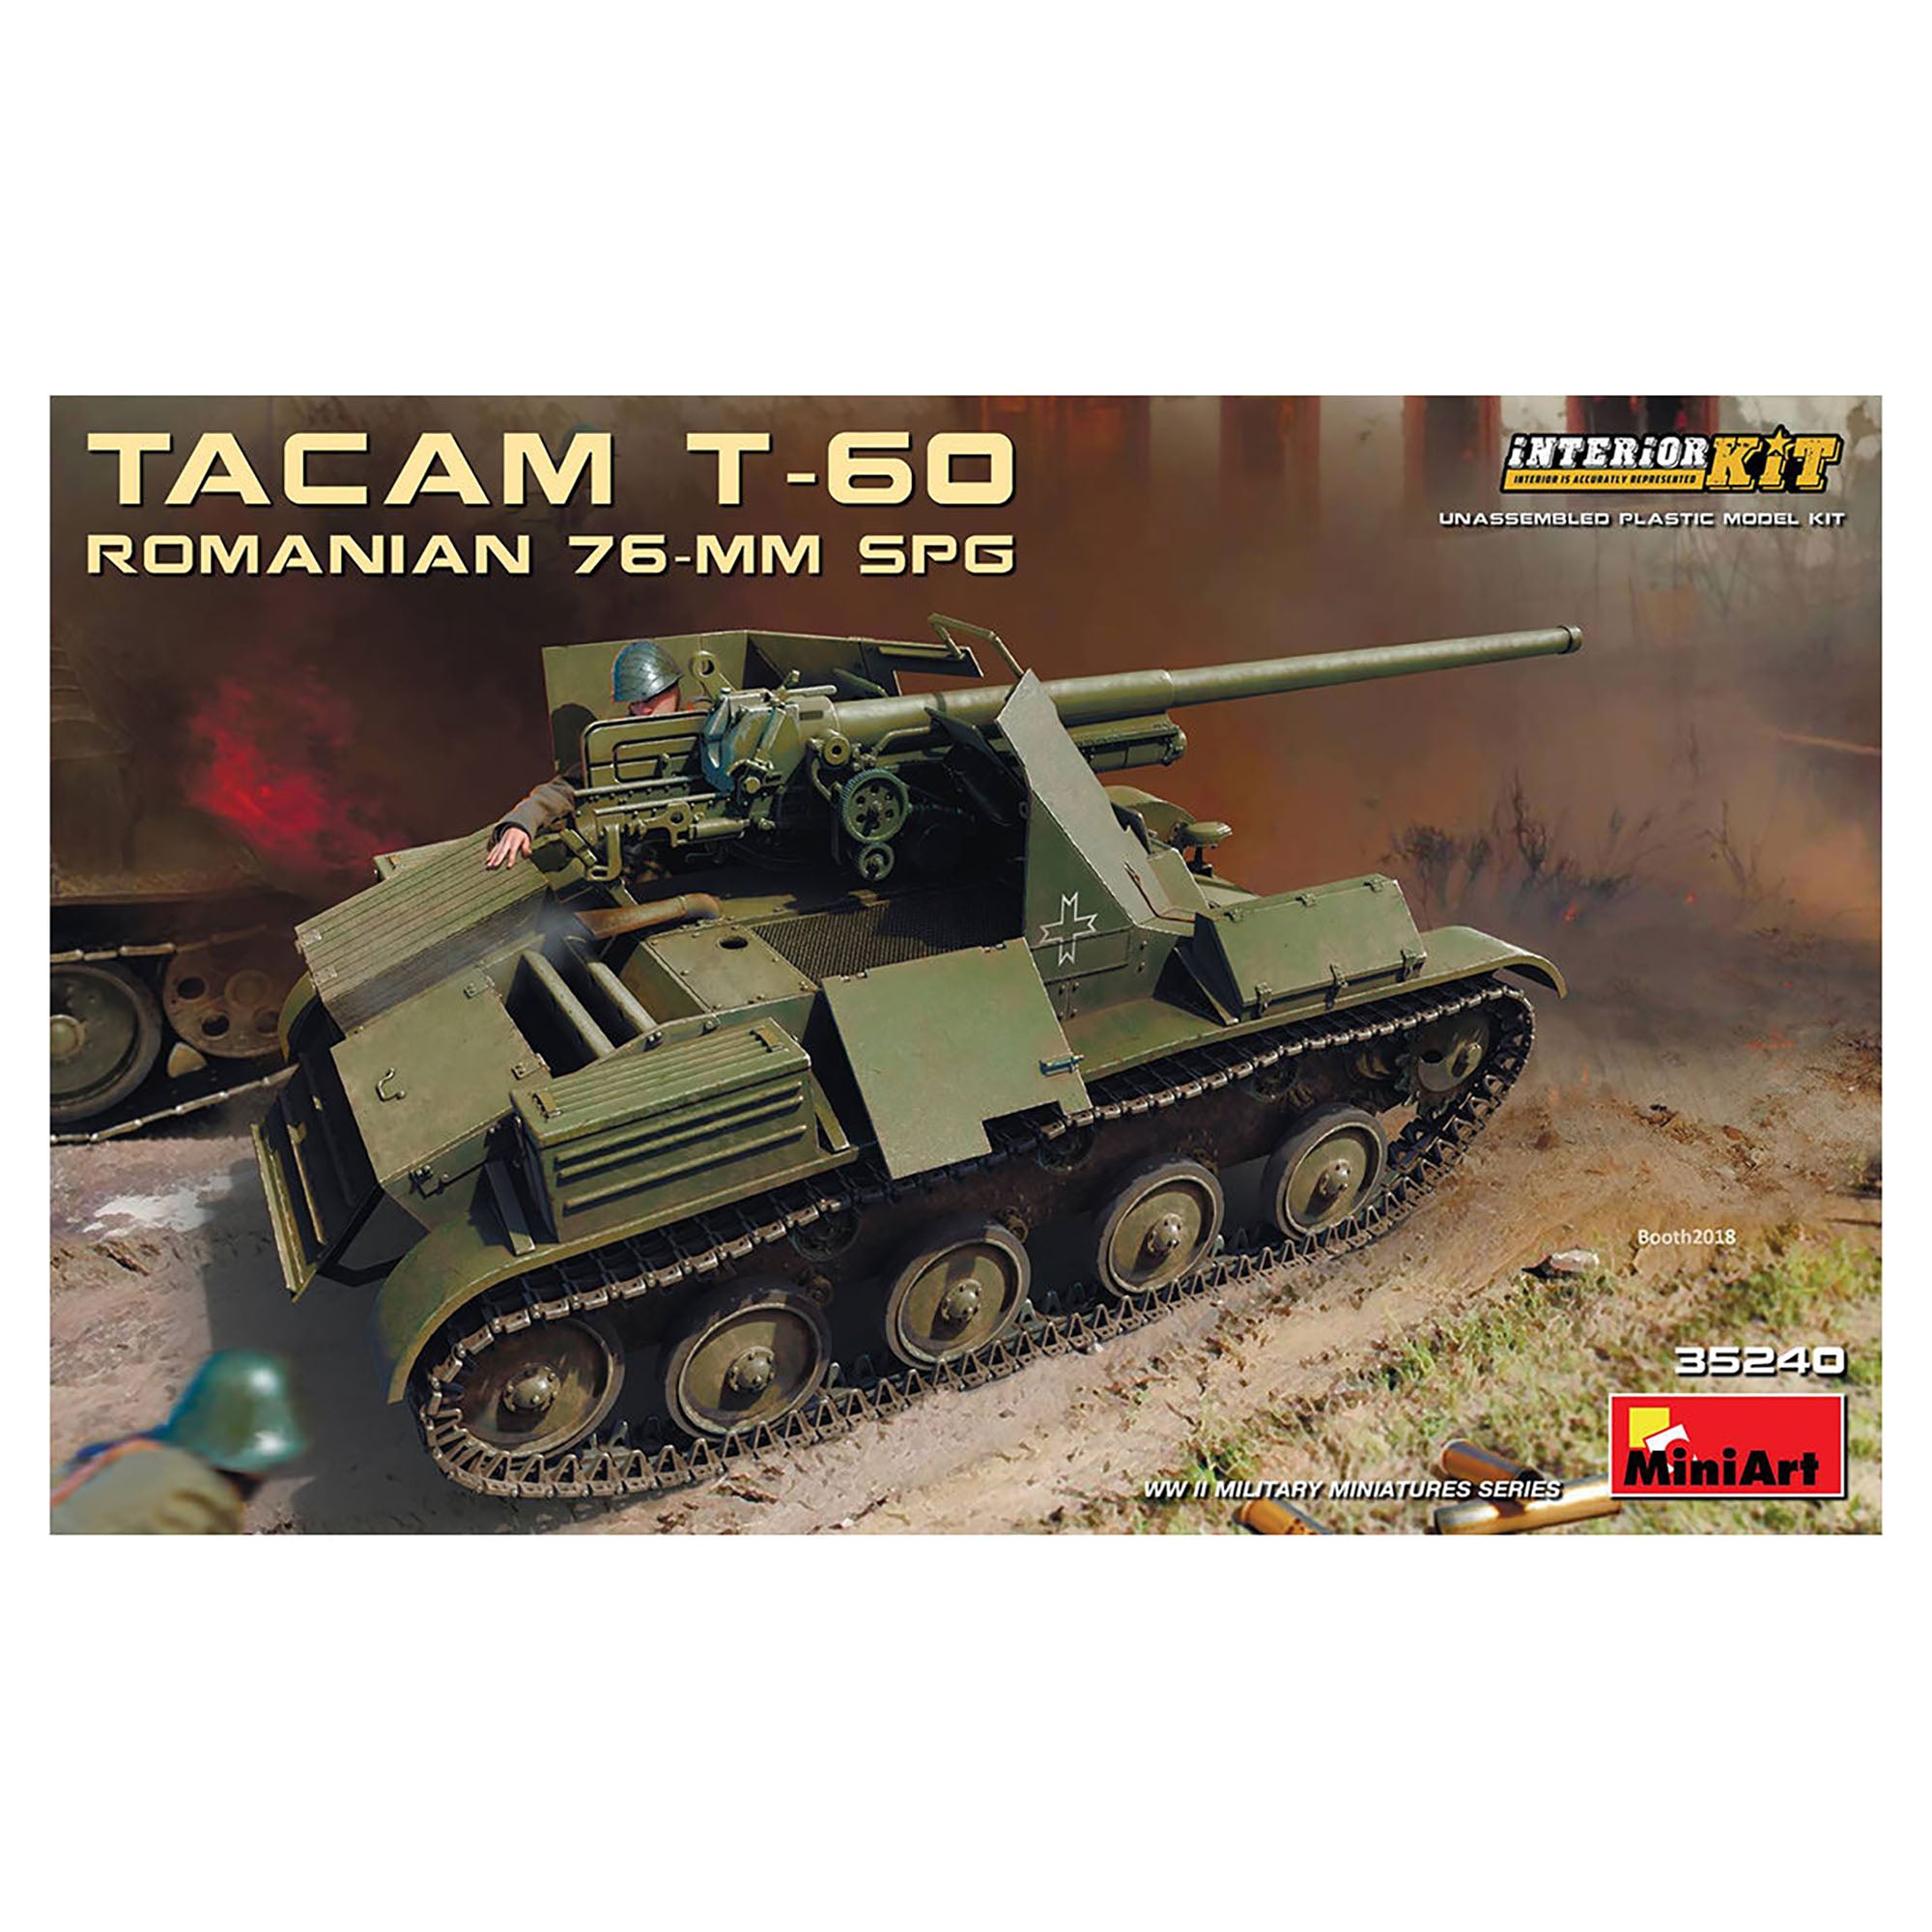 MiniArt 35240 1/35 Tacam T-60 Romanian 76-mm SPG w/Interior Model Kit